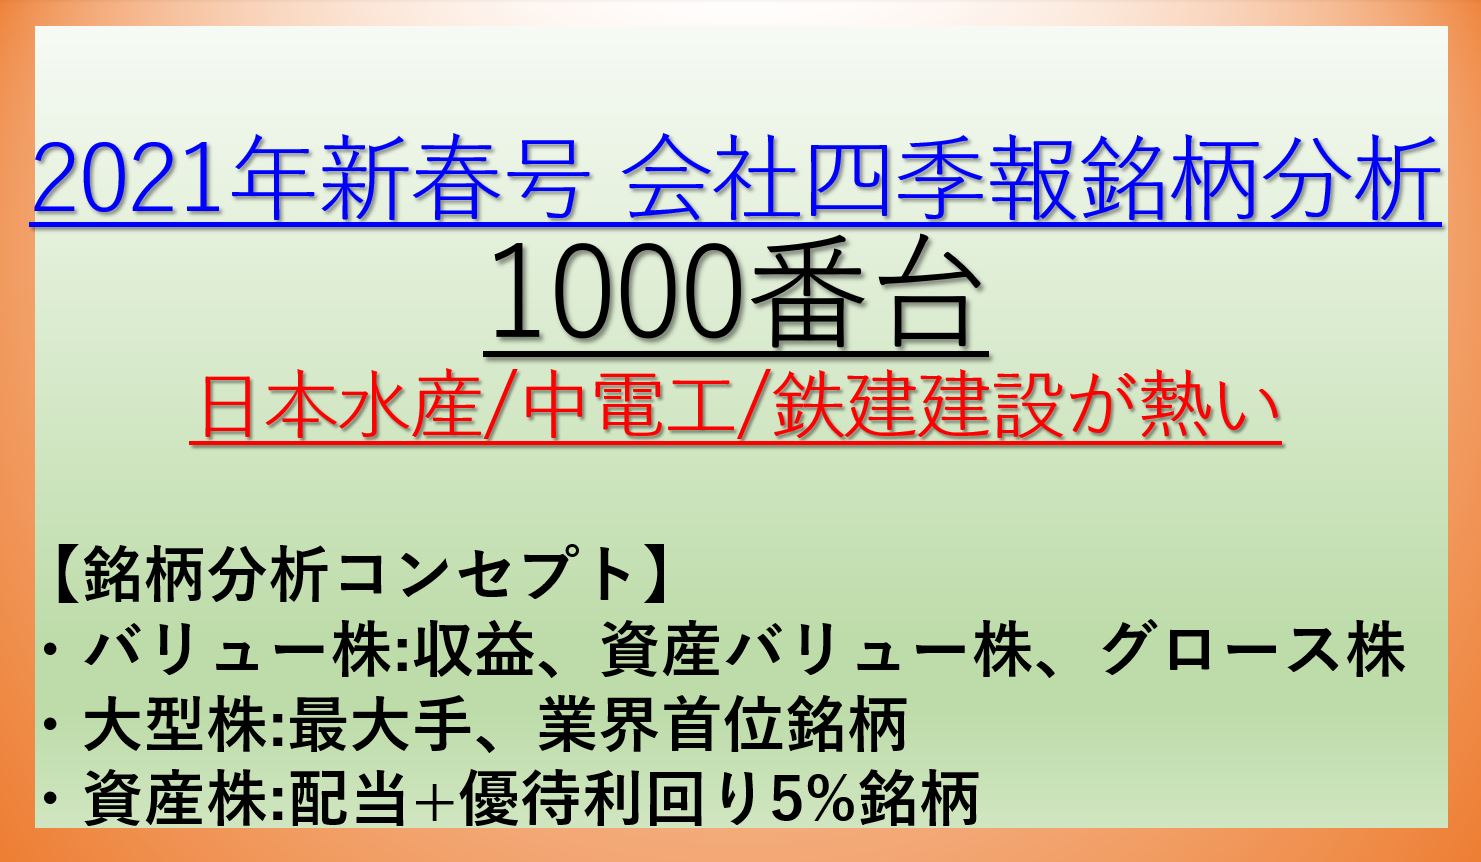 2021年新春号-会社四季報銘柄分析-1000番台